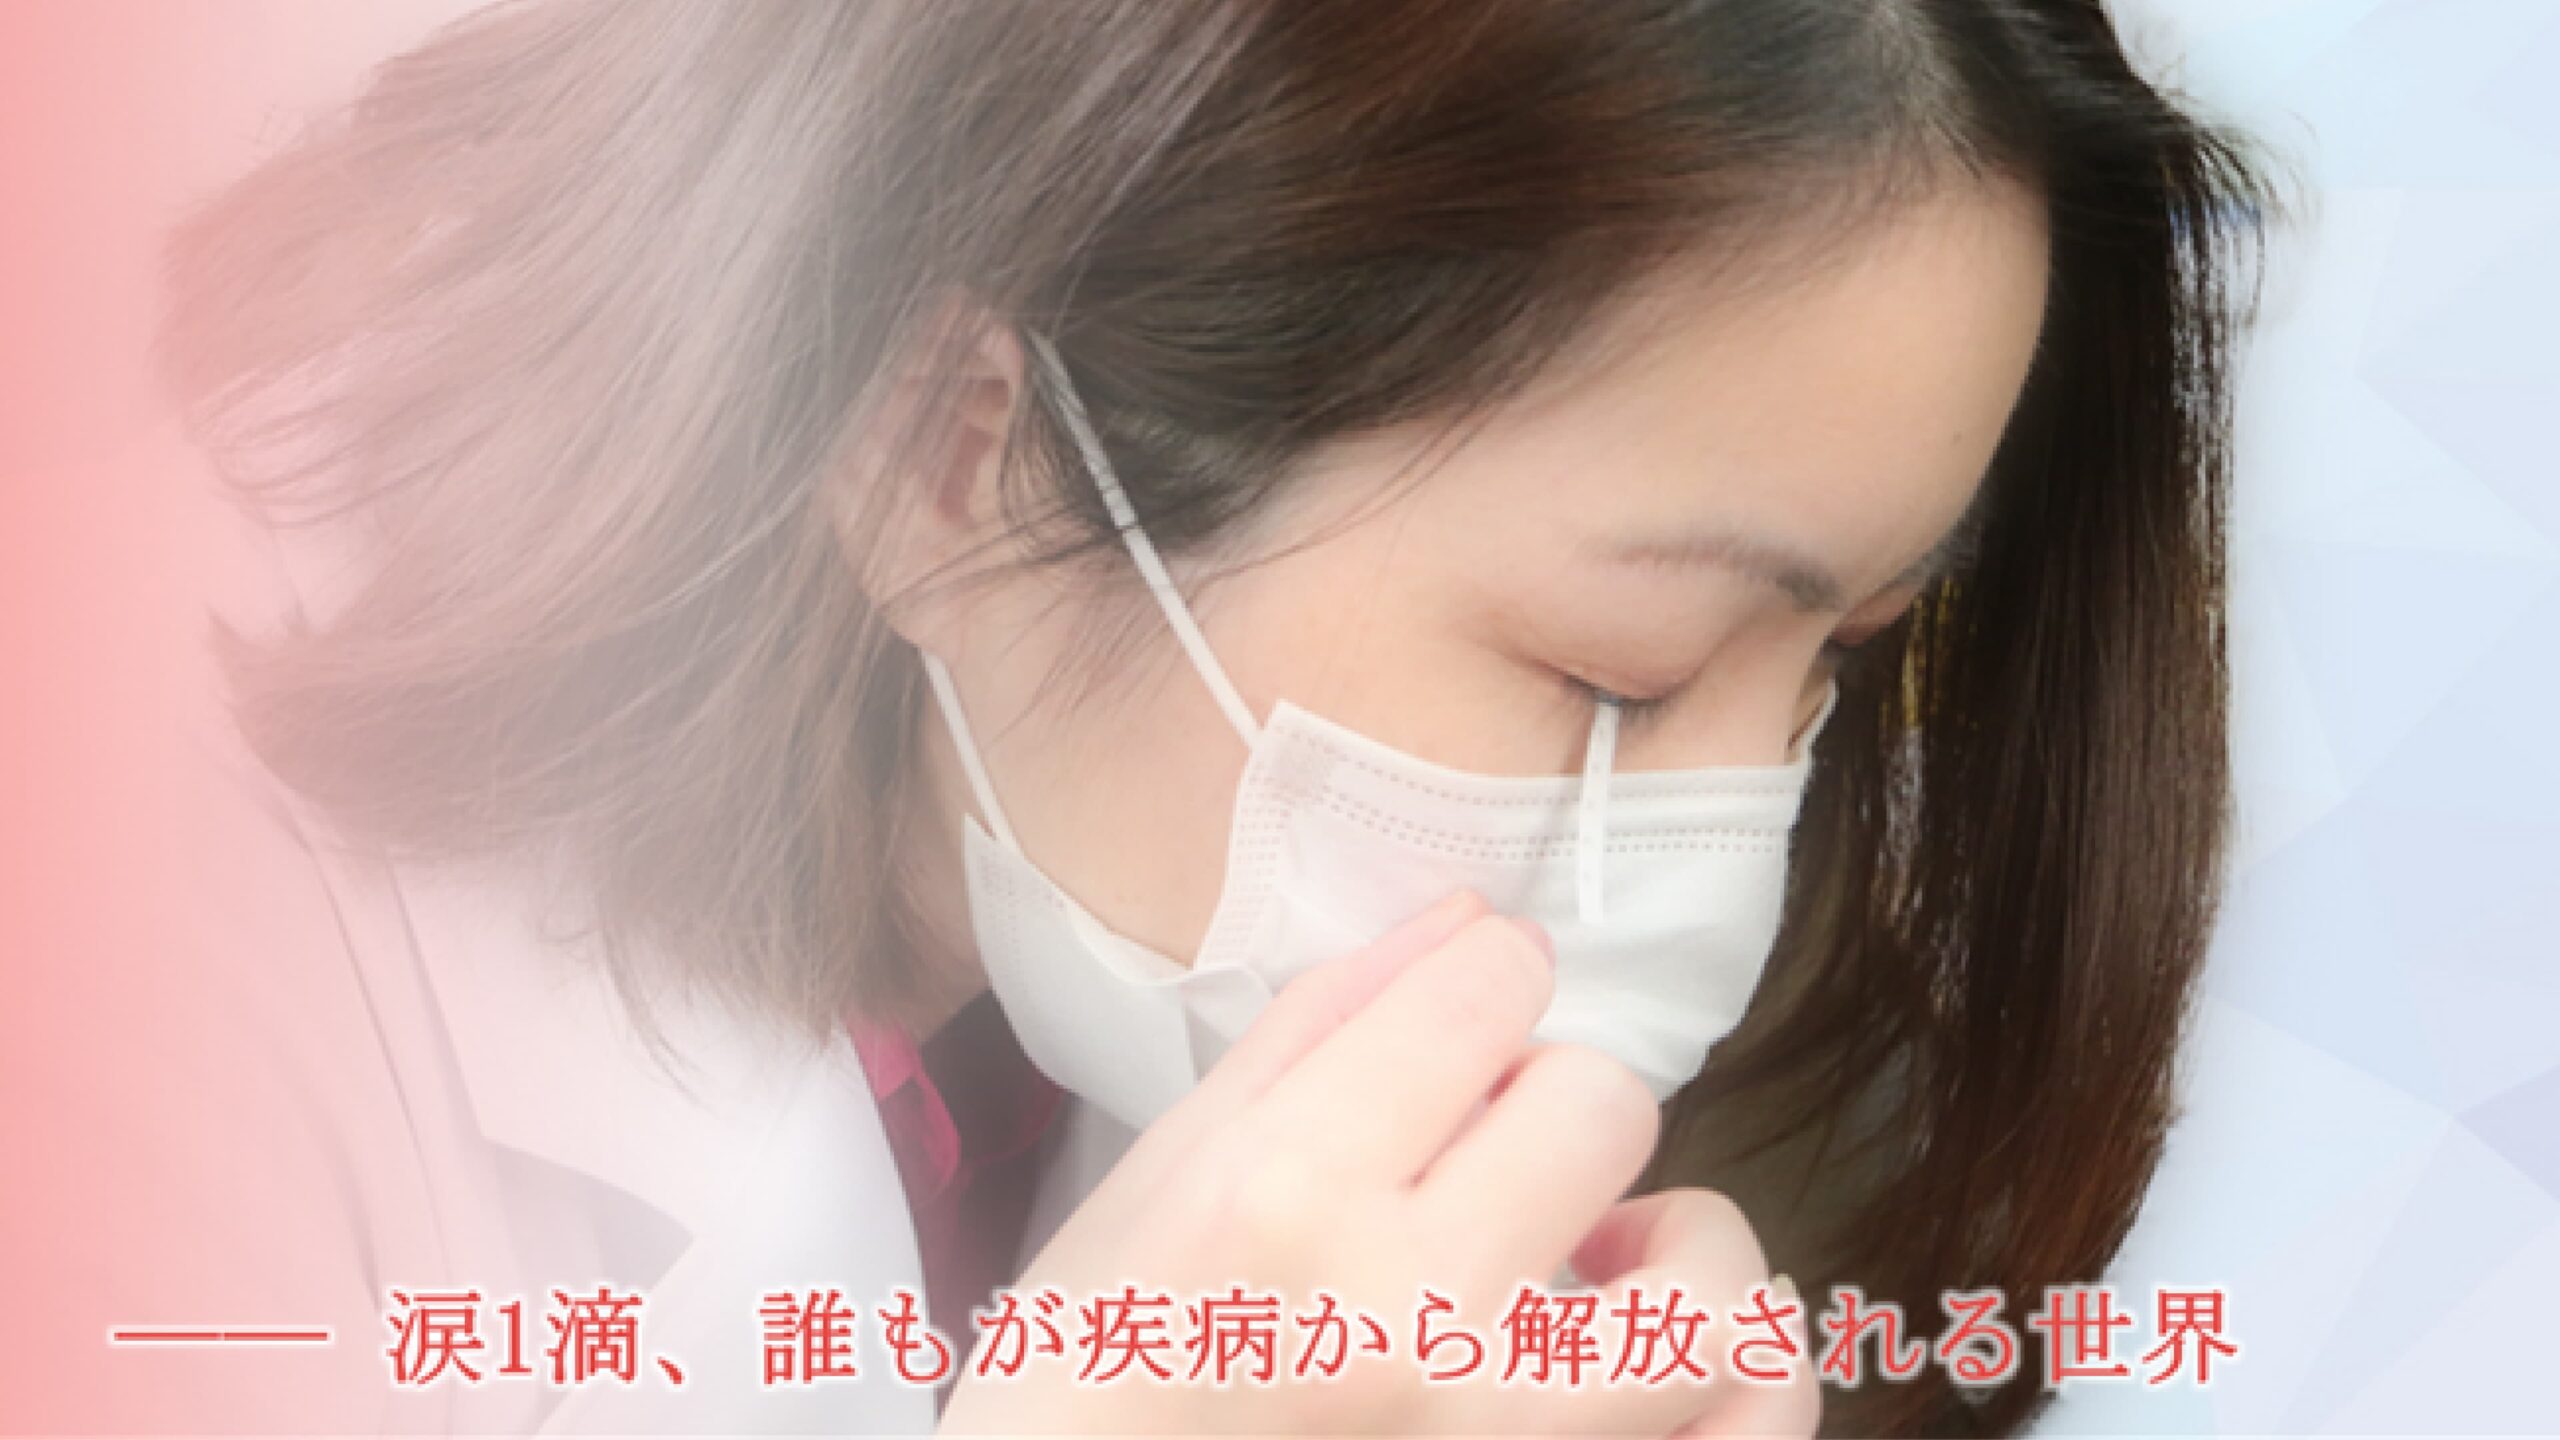 株式会社TearExo、涙液によるがん検出技術のための資金5,000万円を調達